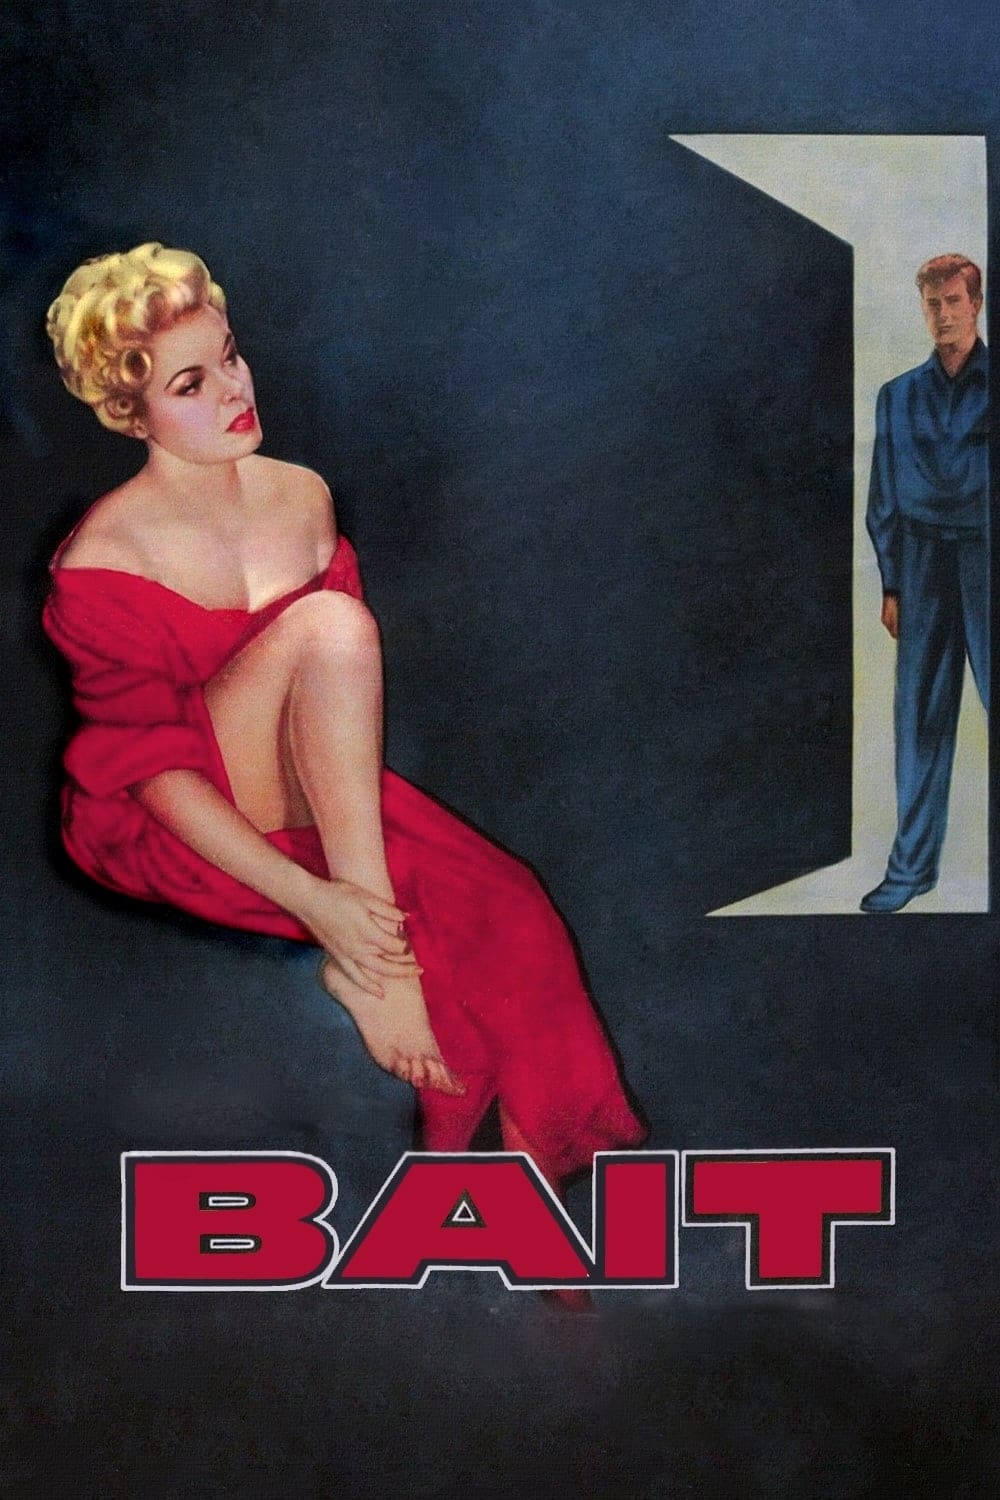 Bait (1954)